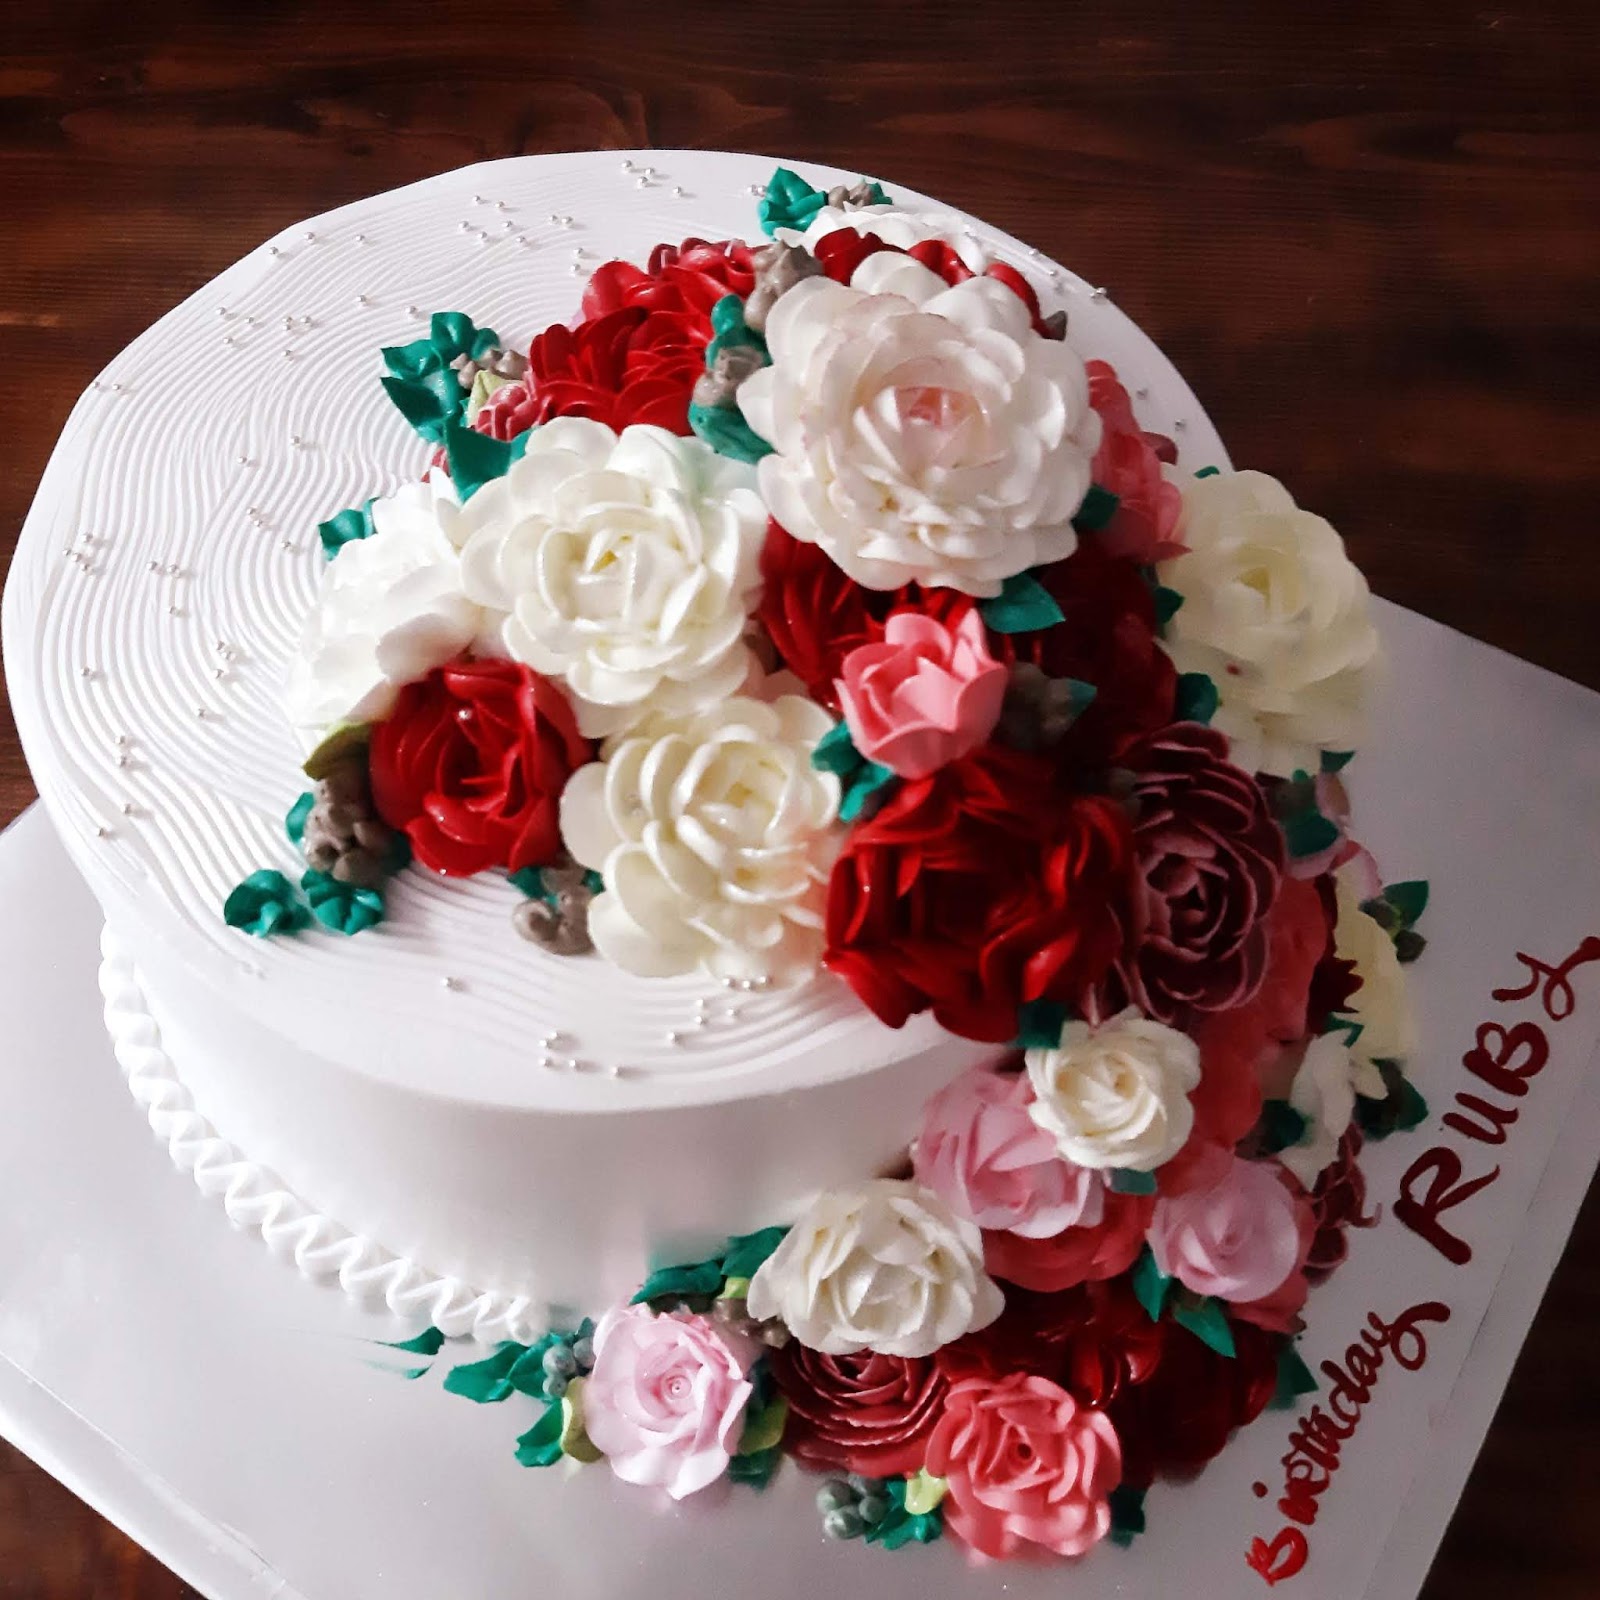 Hình ảnh chiếc bánh sinh nhật hoa trắng hoa hồng hoa đỏ nở rực rỡ